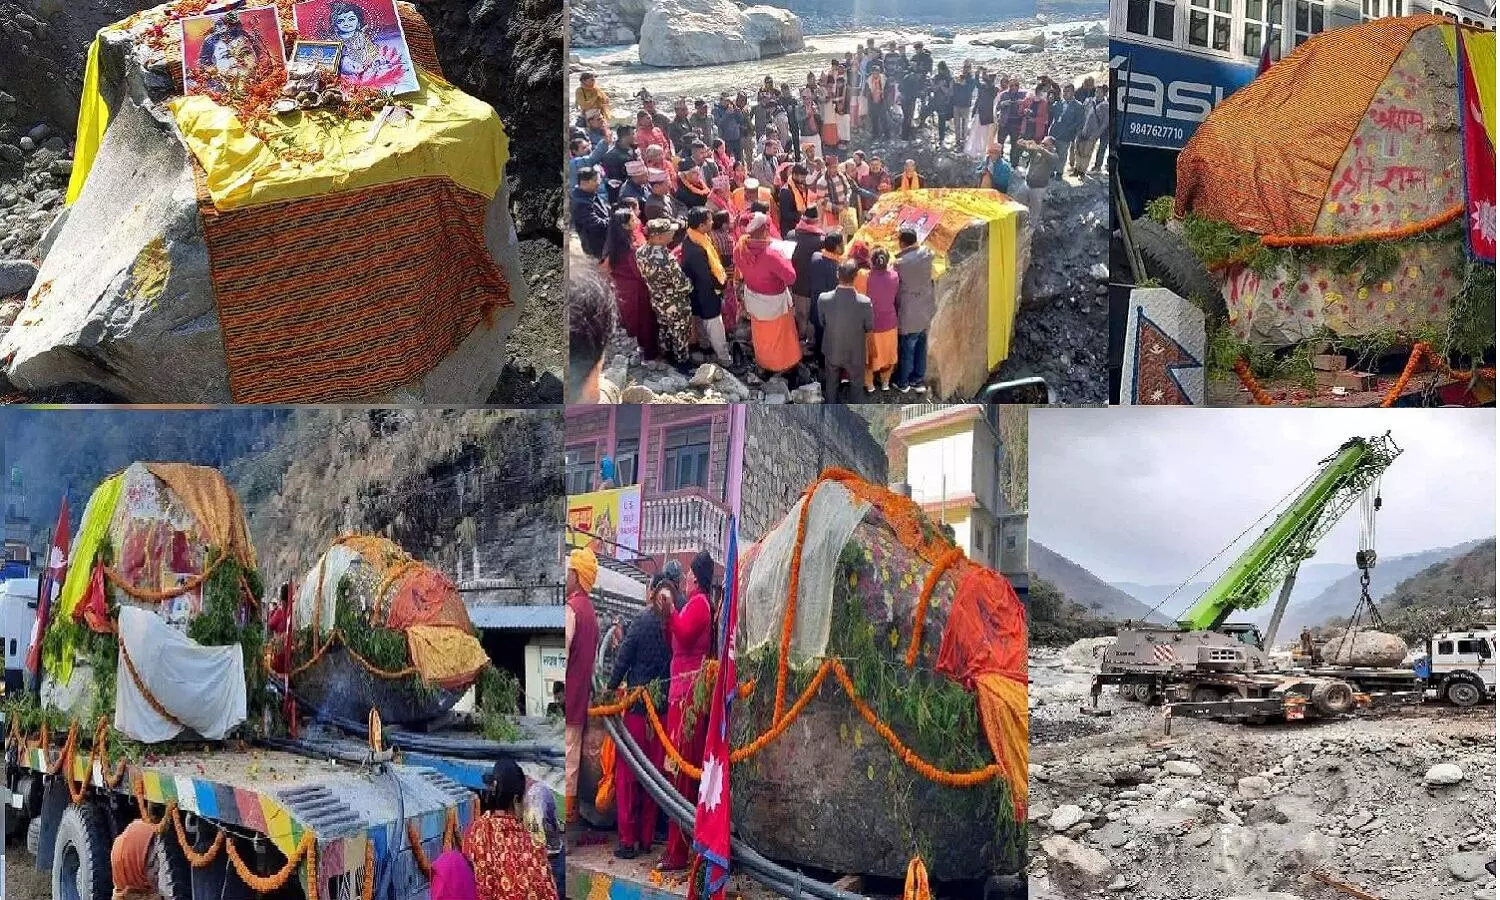 नेपाल से अयोध्या लाई जा रहीं 6 करोड़ साल पुरानी, 40 टन वजनी दो शालिग्राम चट्टानें, इनसे भगवान श्री राम और माता सीता की प्रतिमाएं बनेगीं